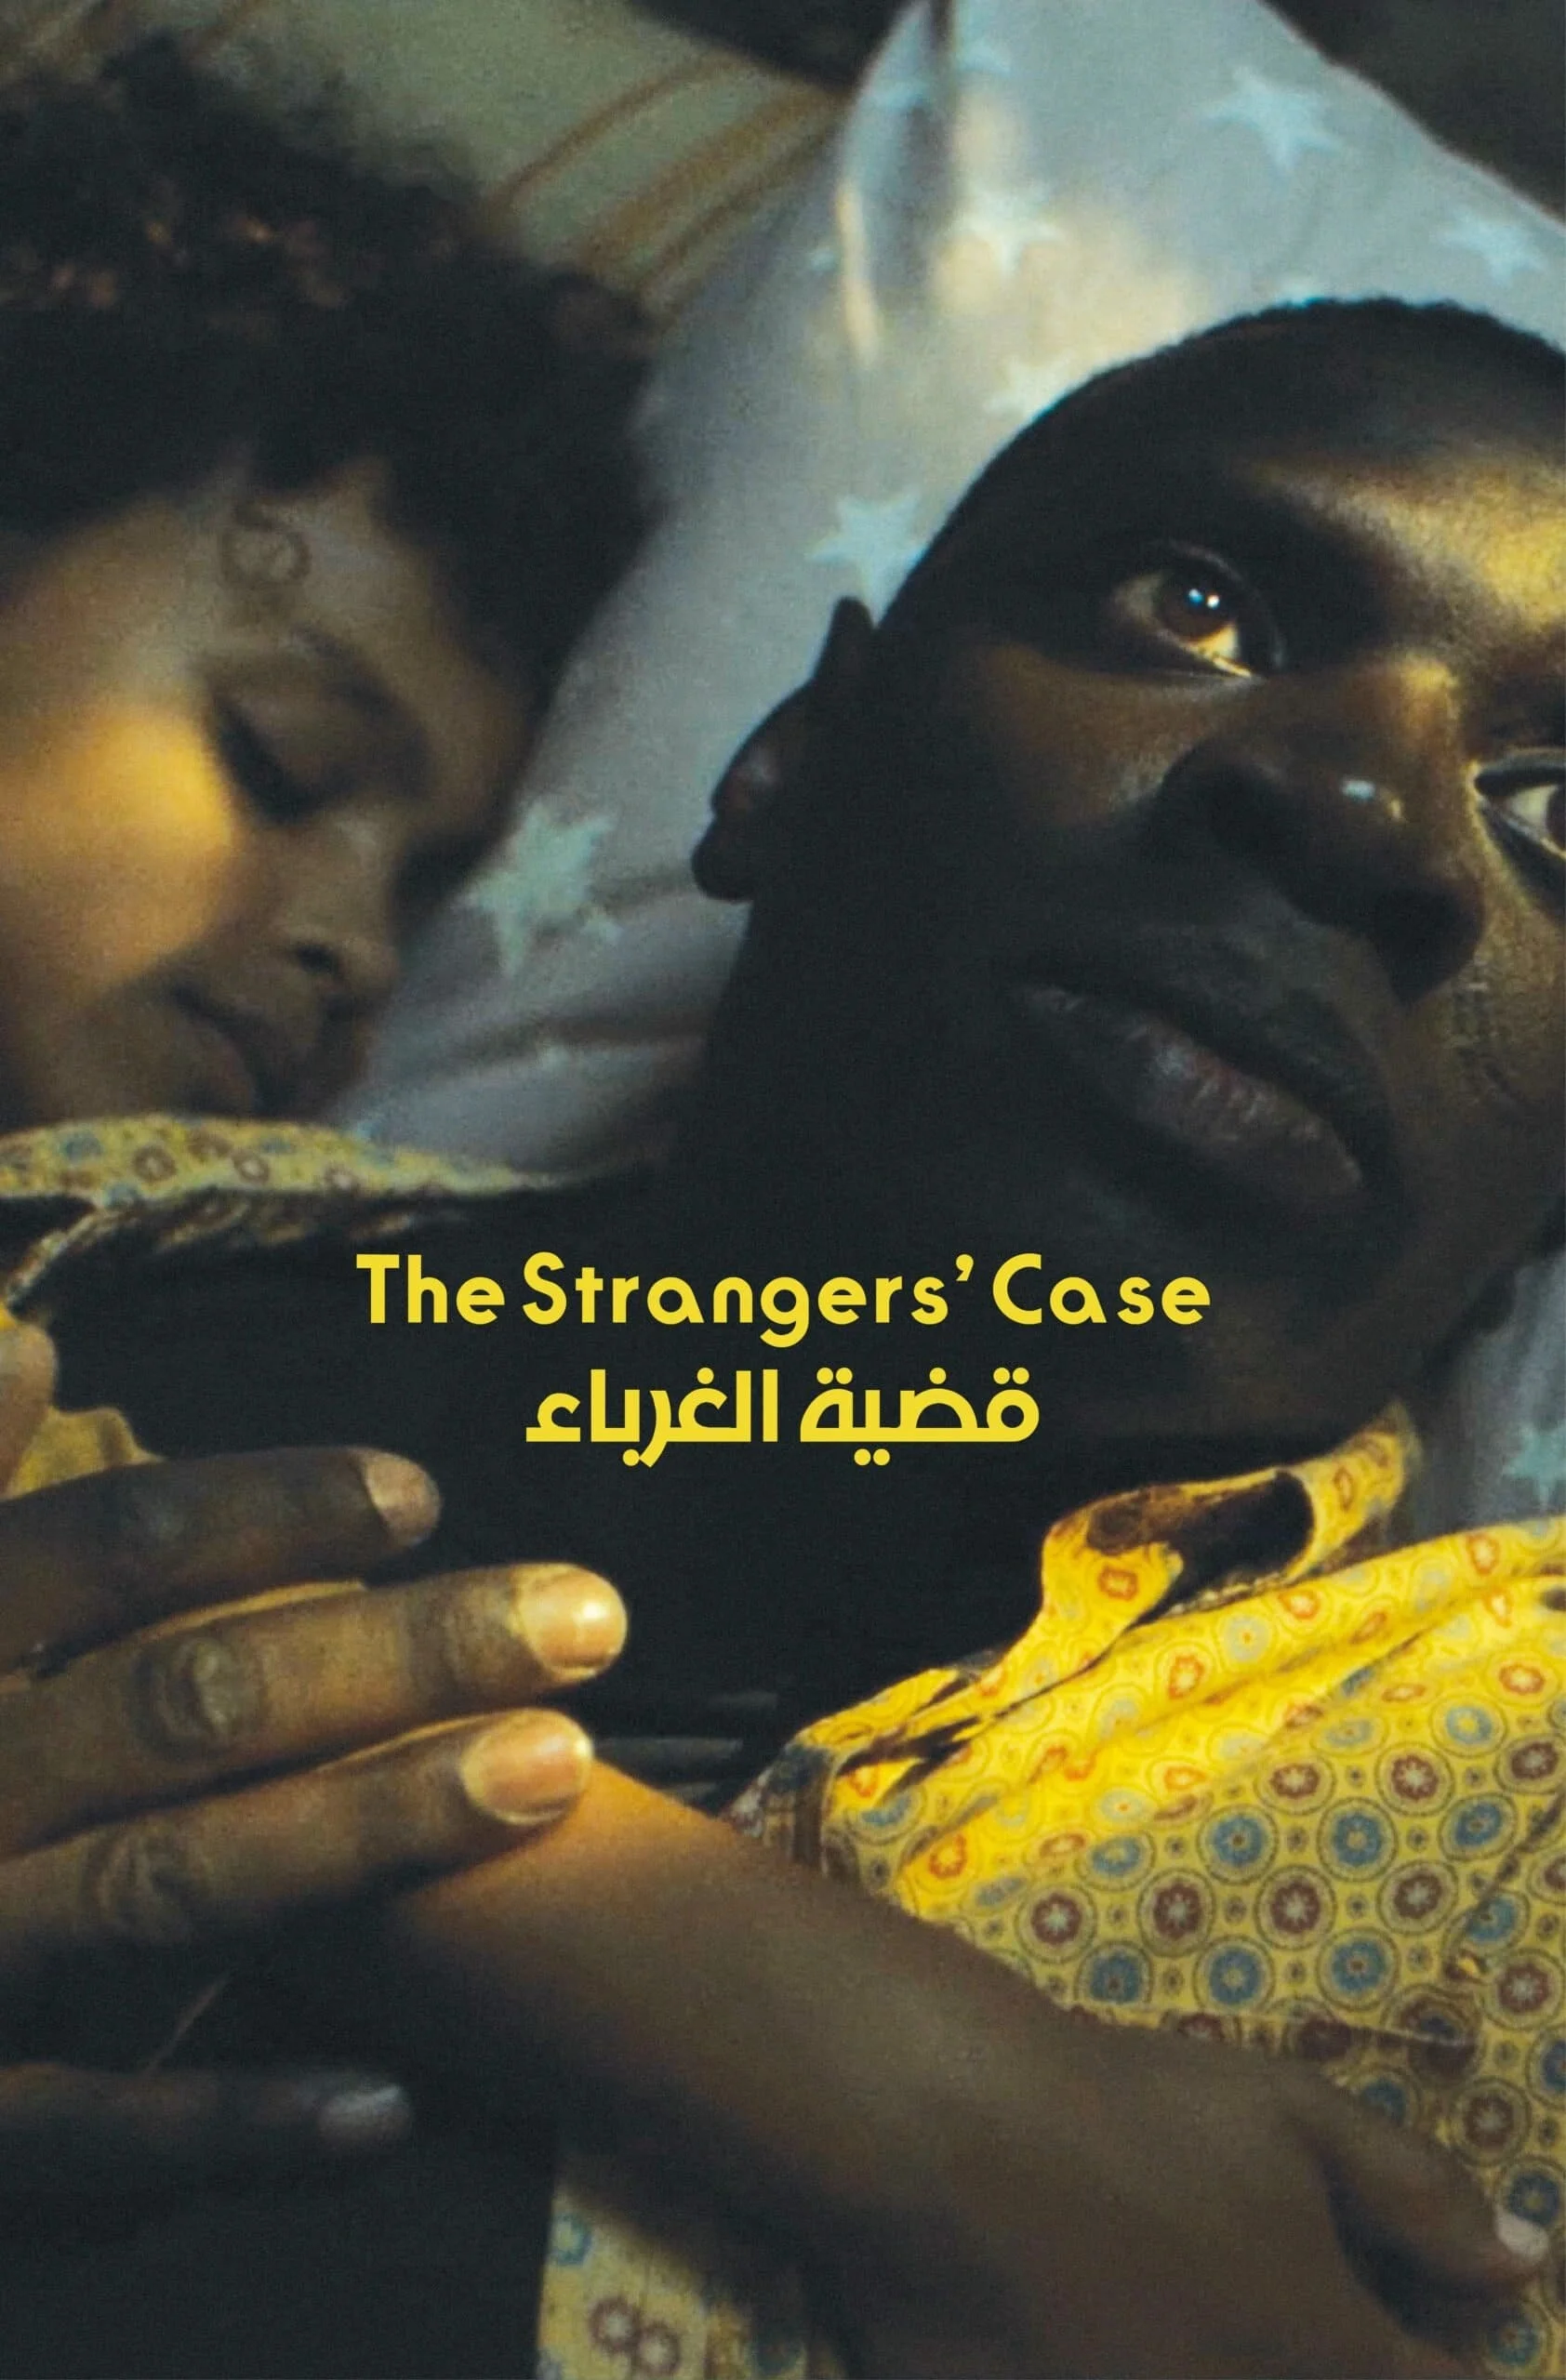 The Stranger's Case